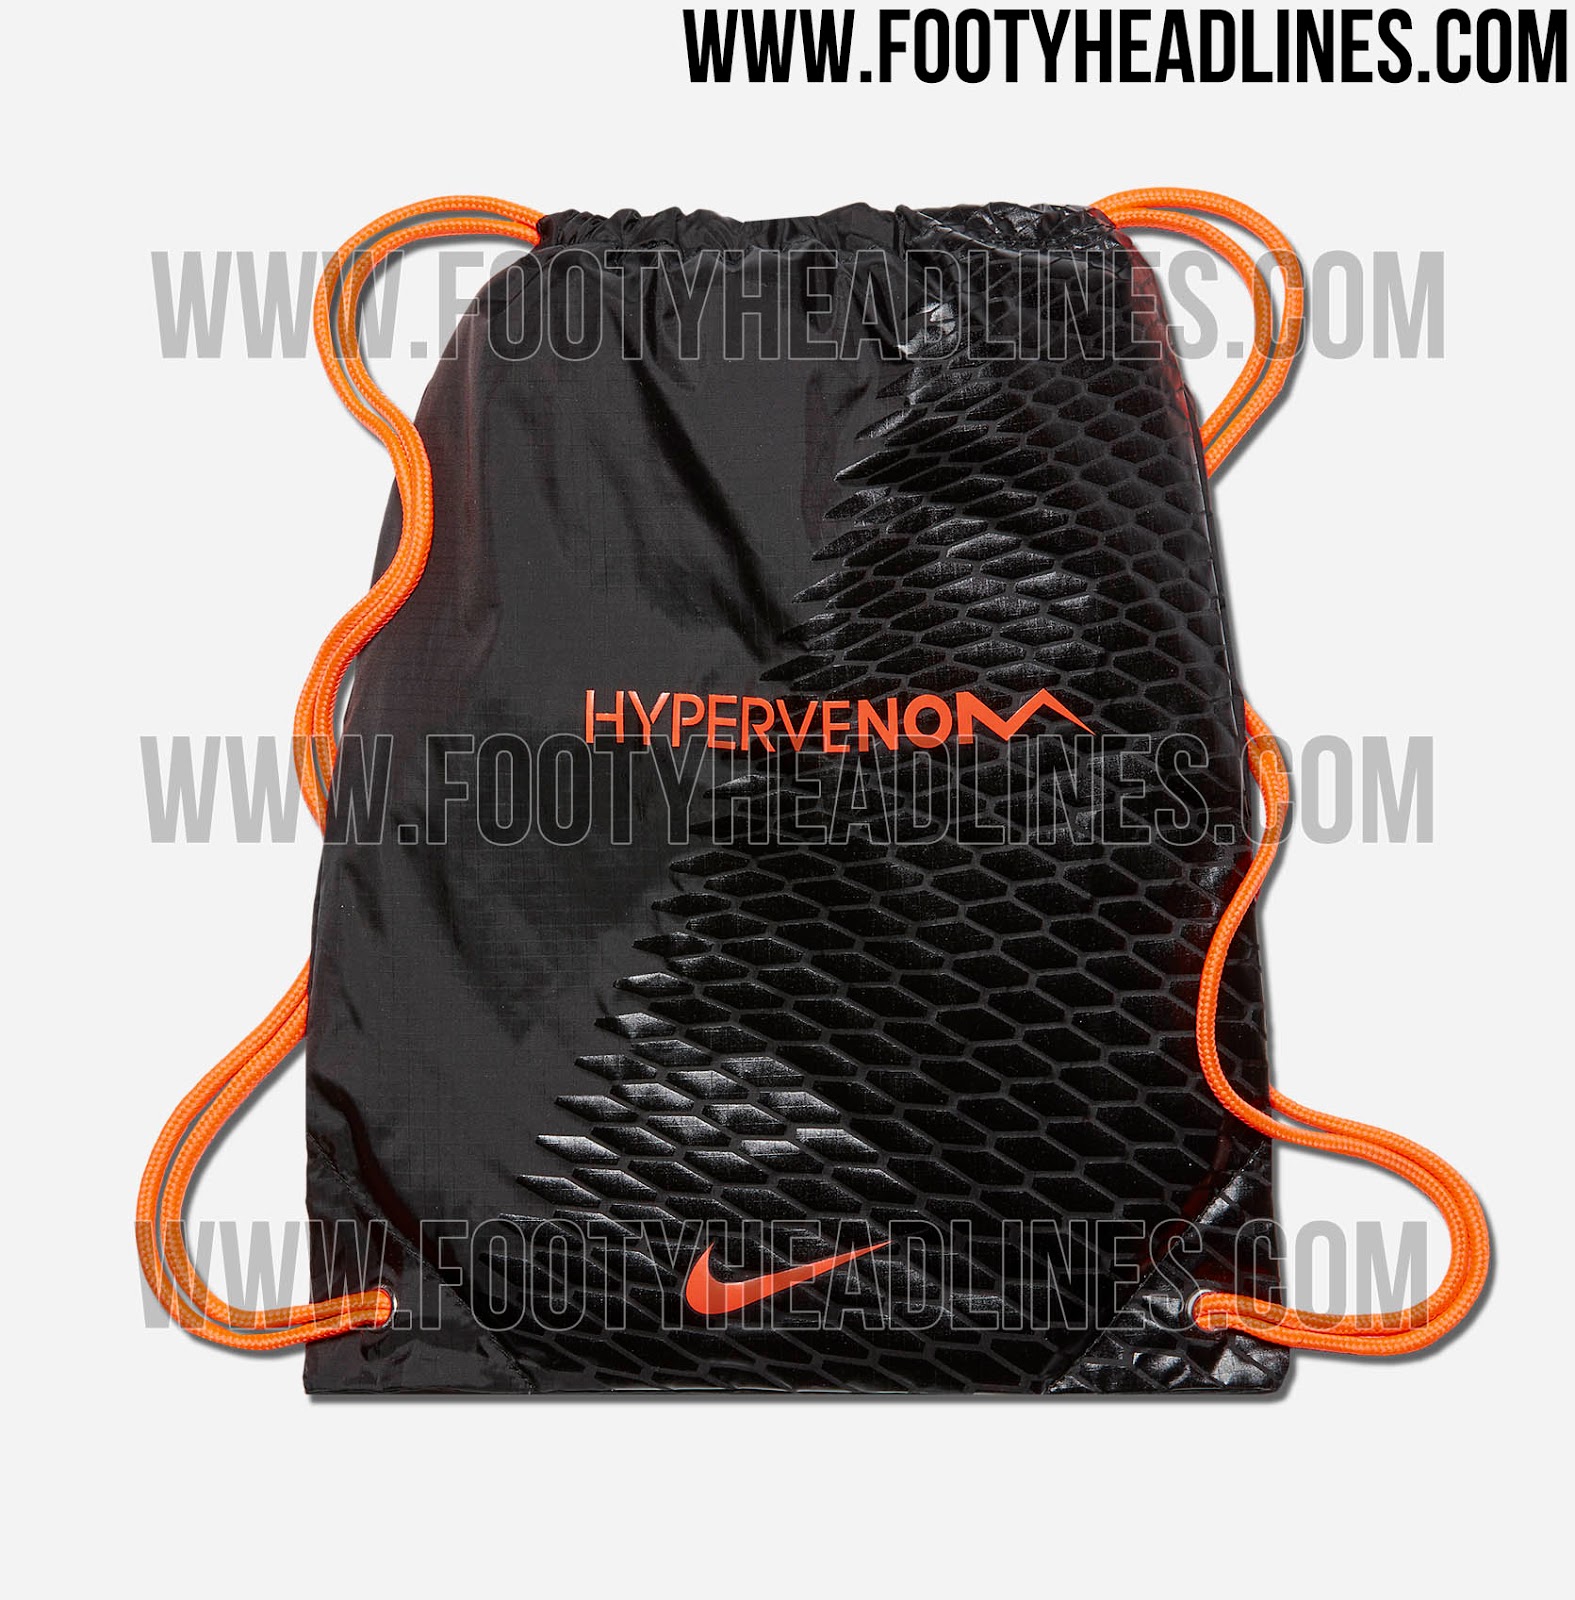 Football shoes Nike HYPERVENOM PHANTOM III FG - Top4Fitness.com